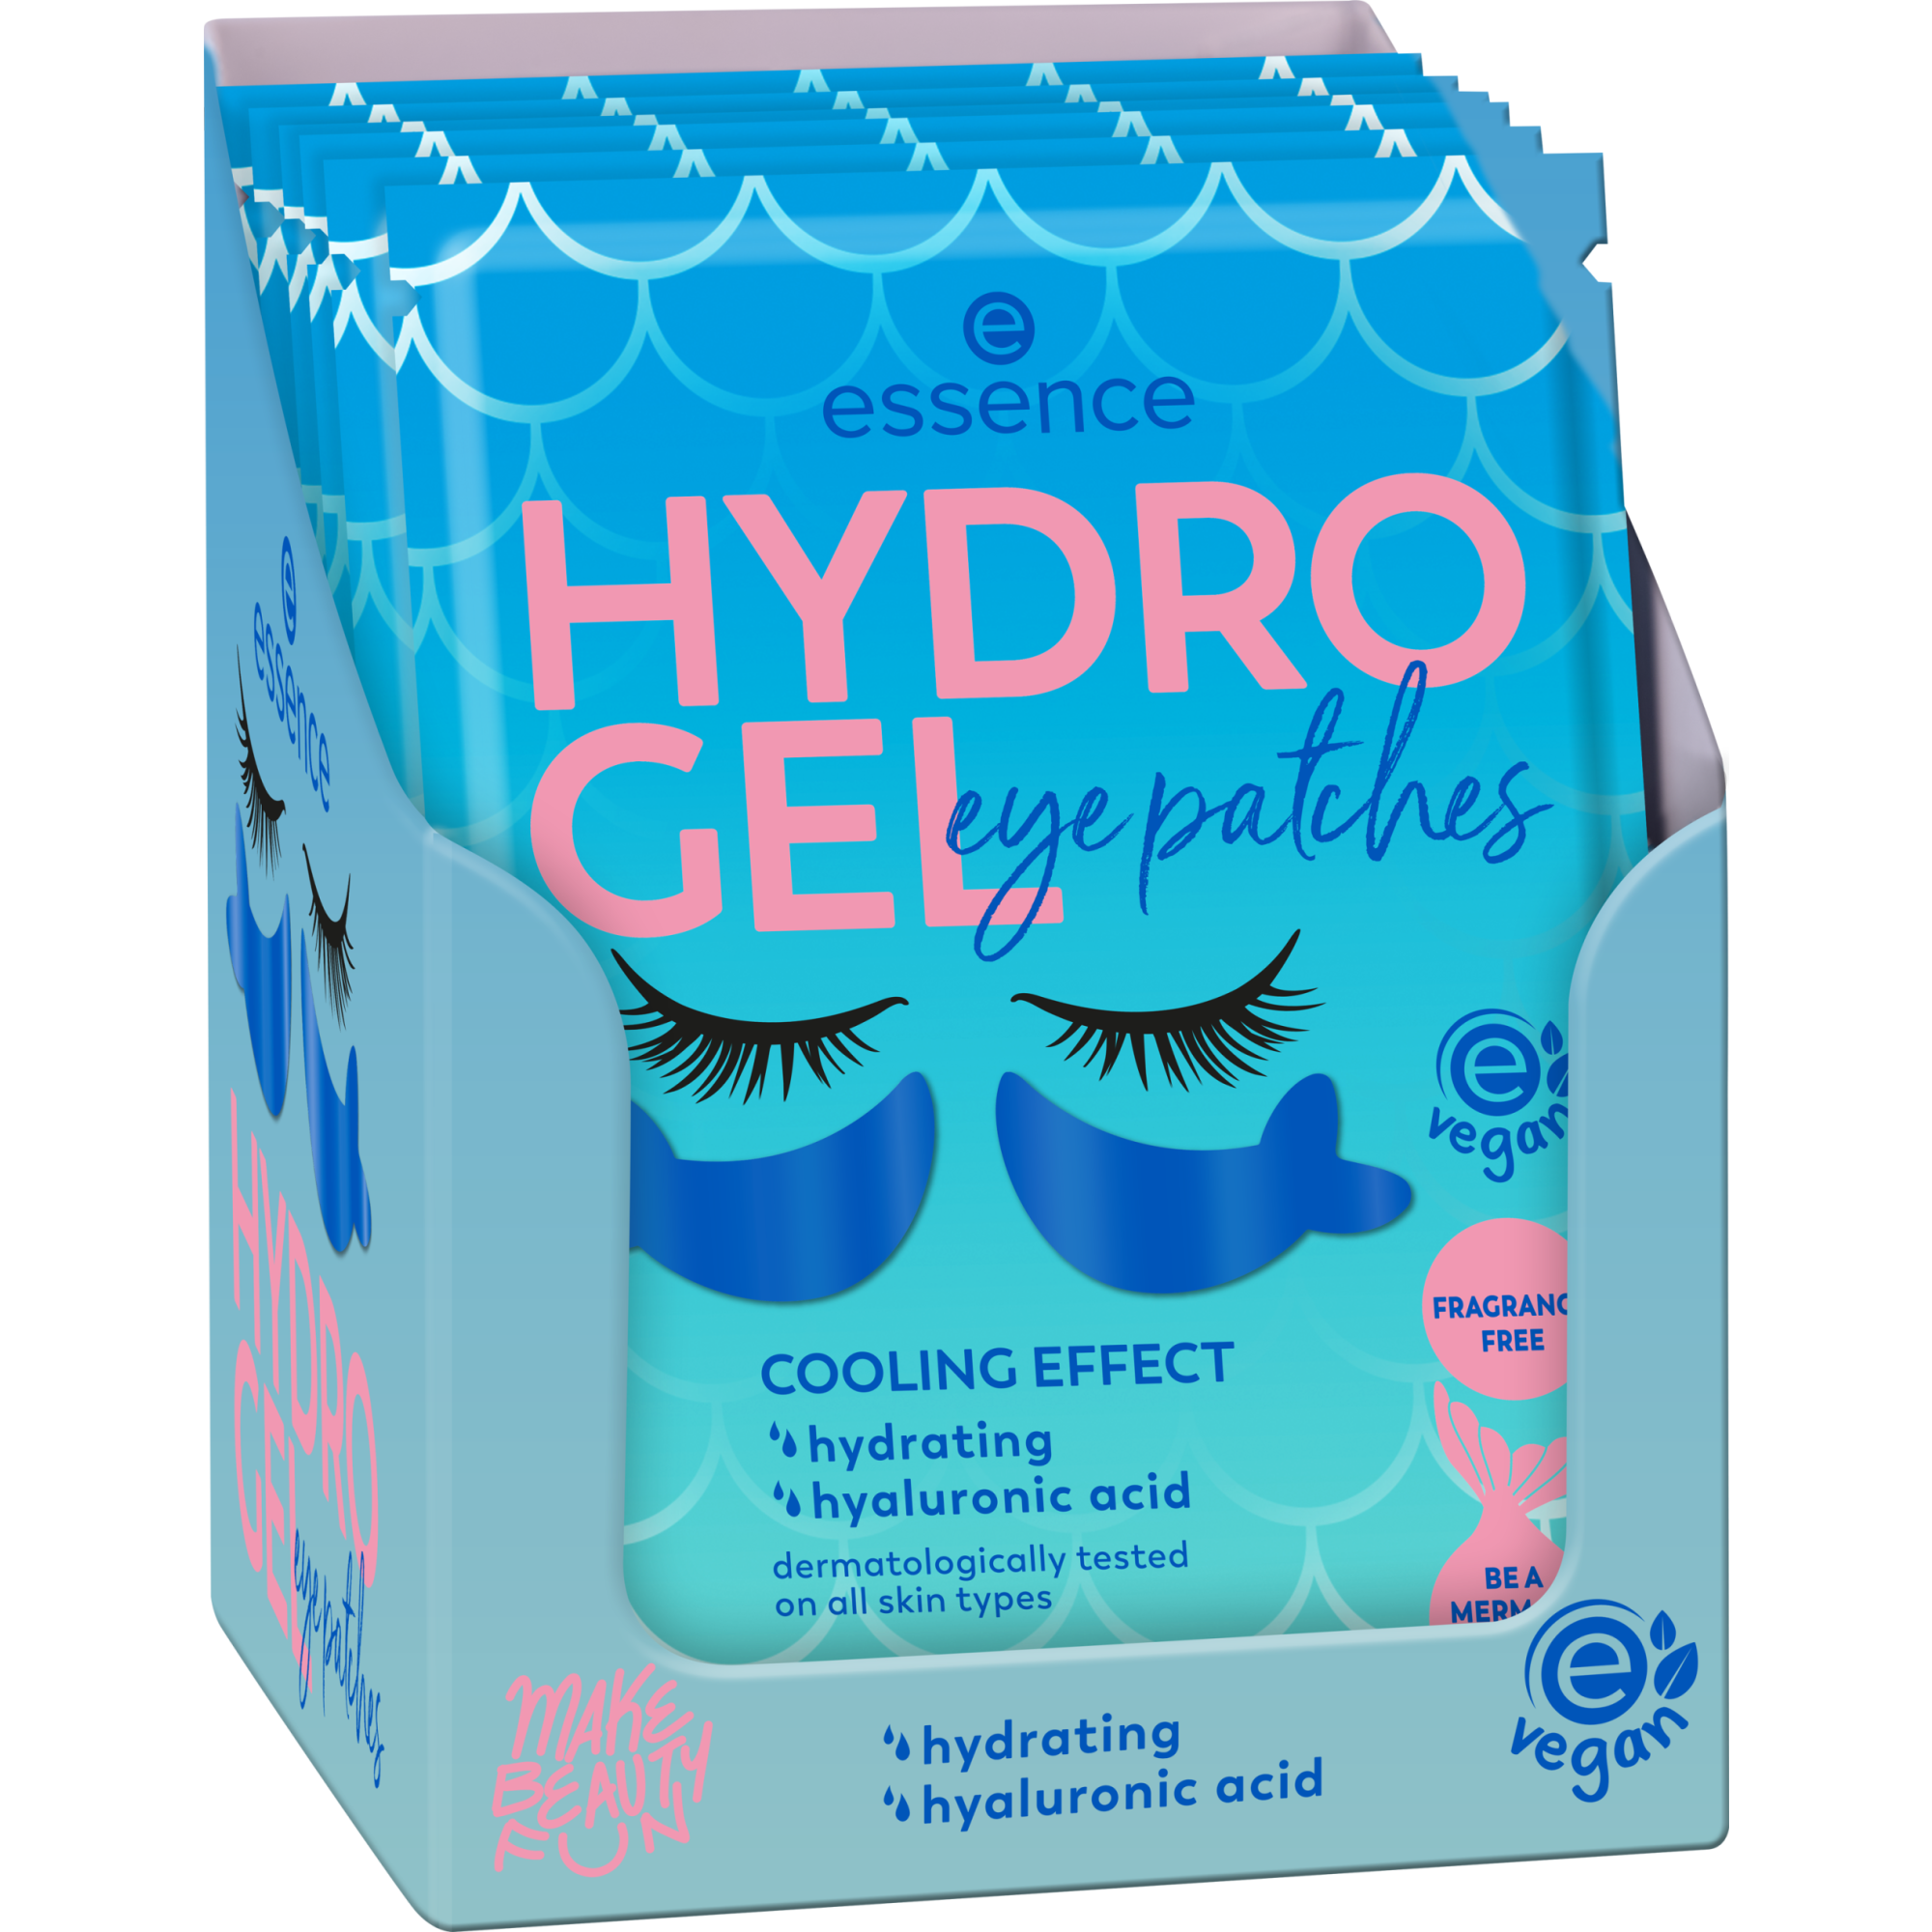 HYDRO GEL eye patches